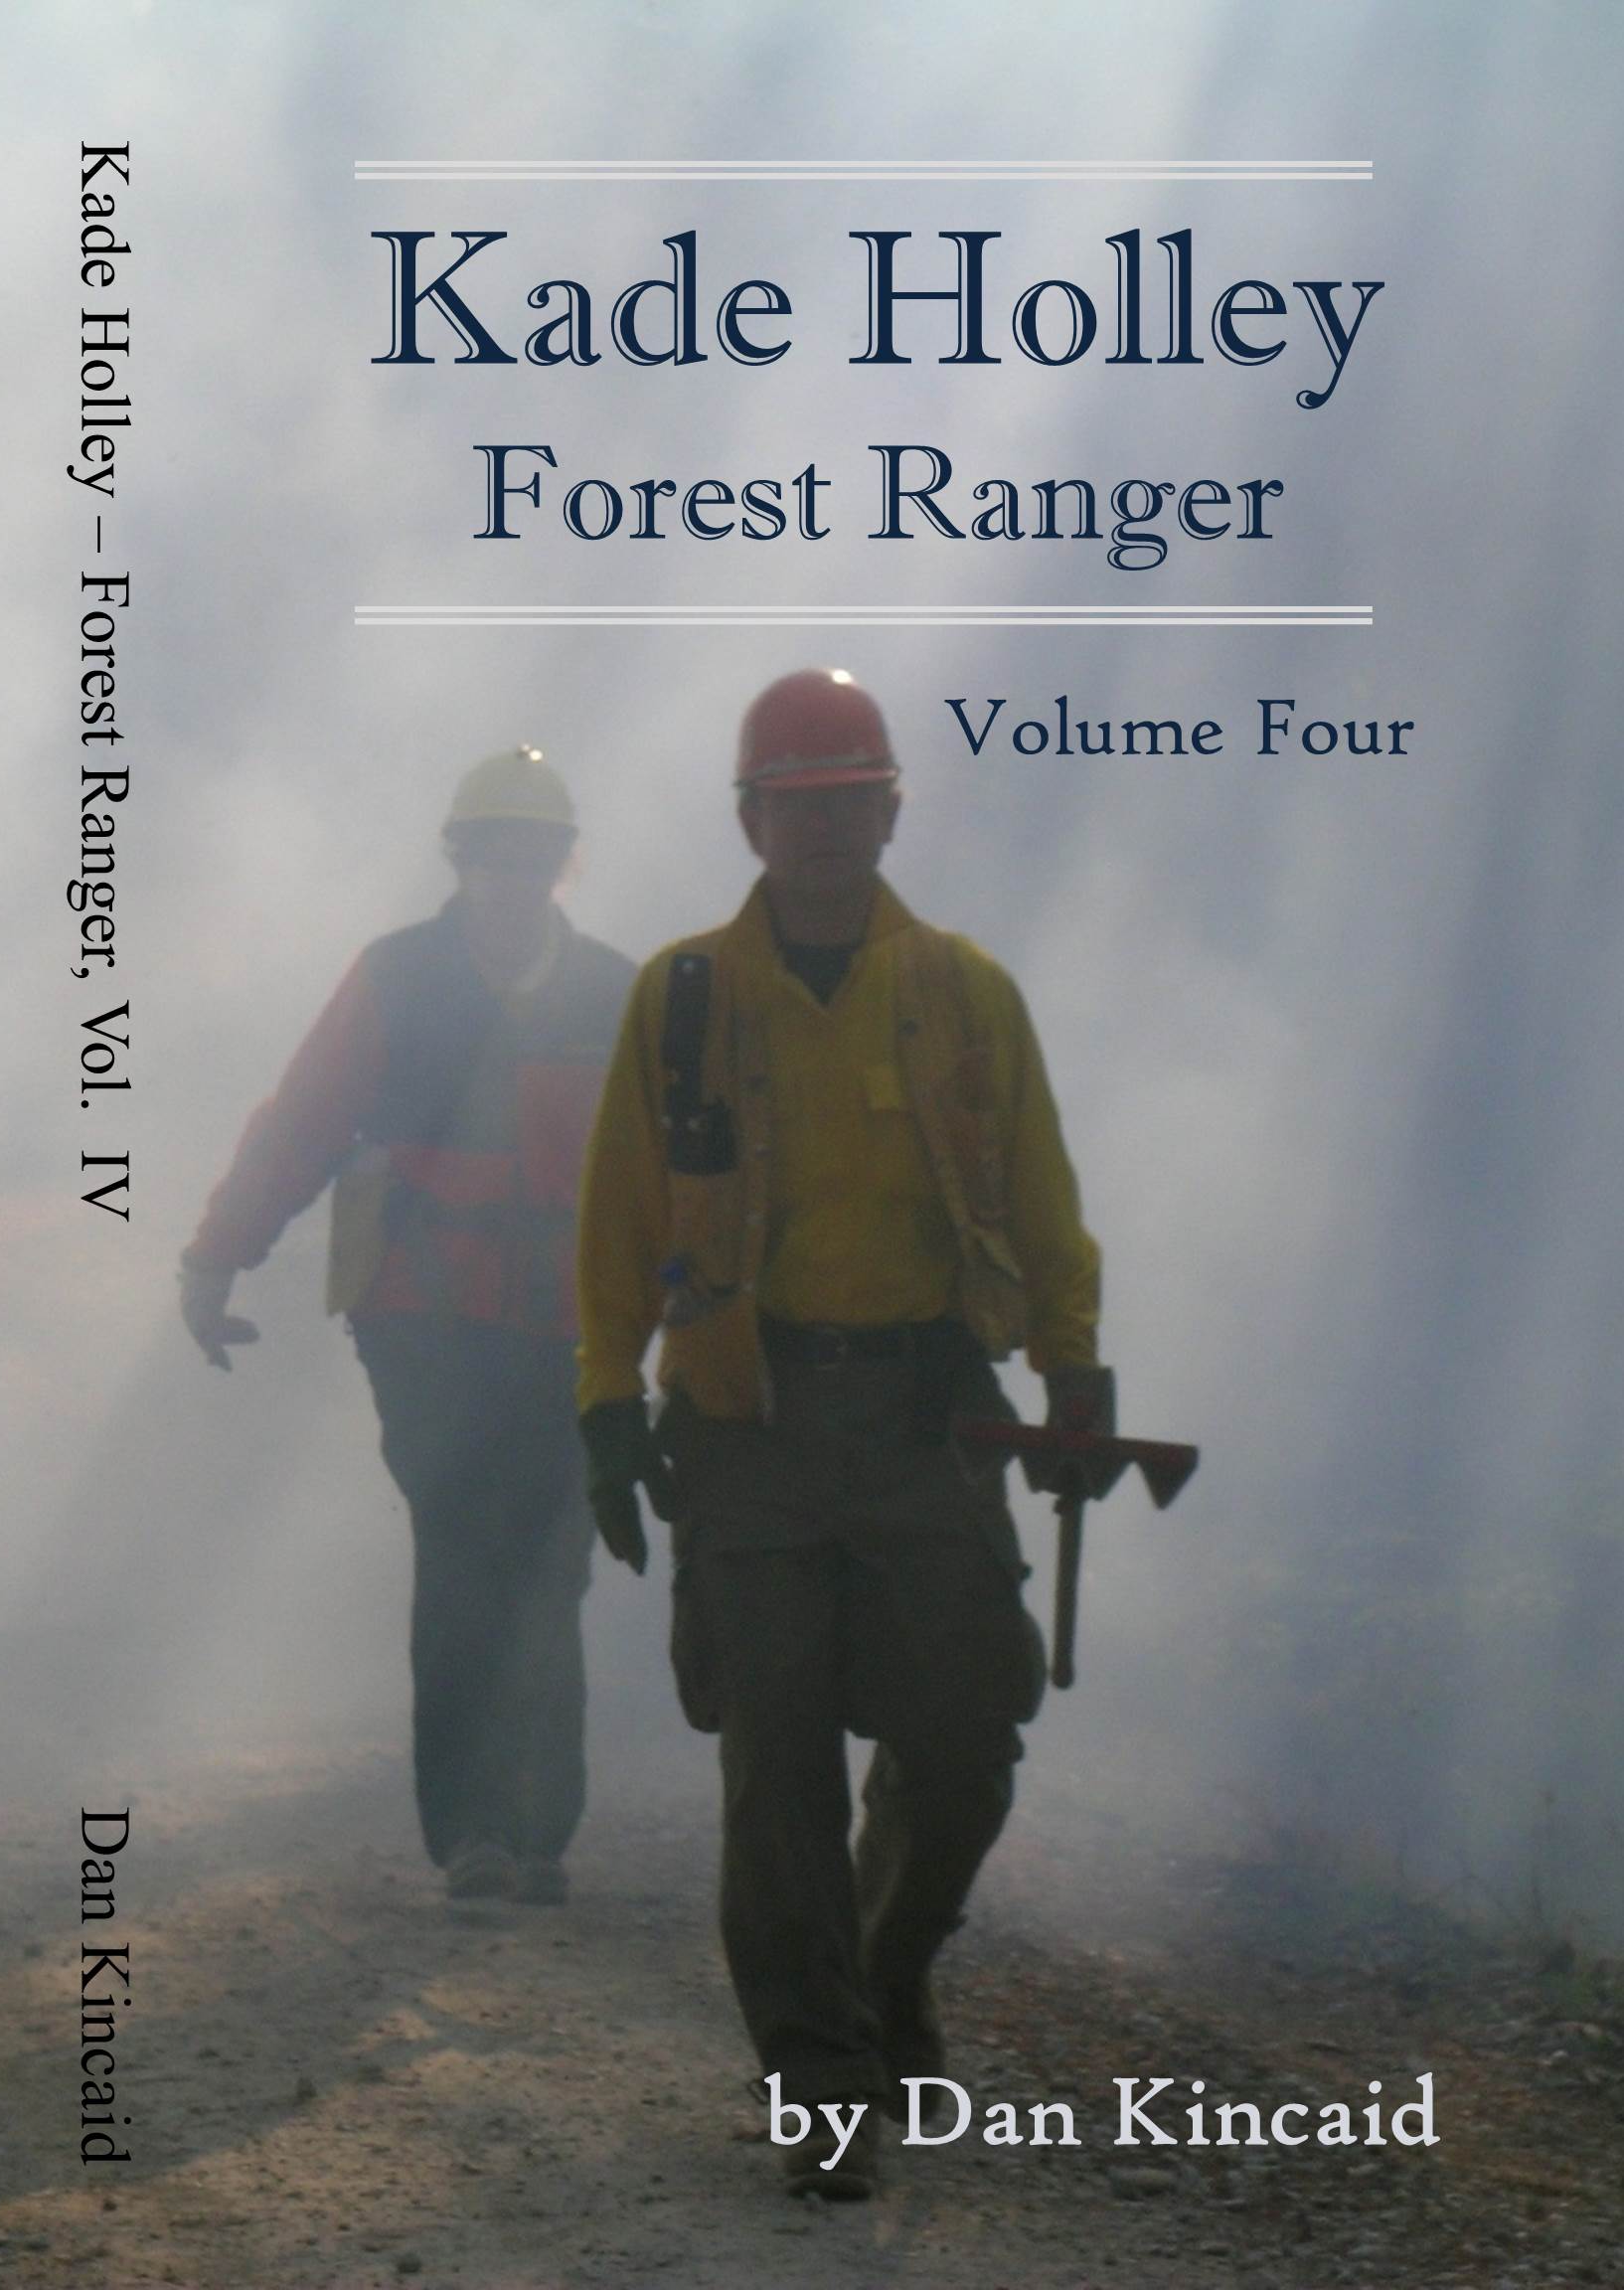 Kade Holley, Forest Ranger Vol. IV